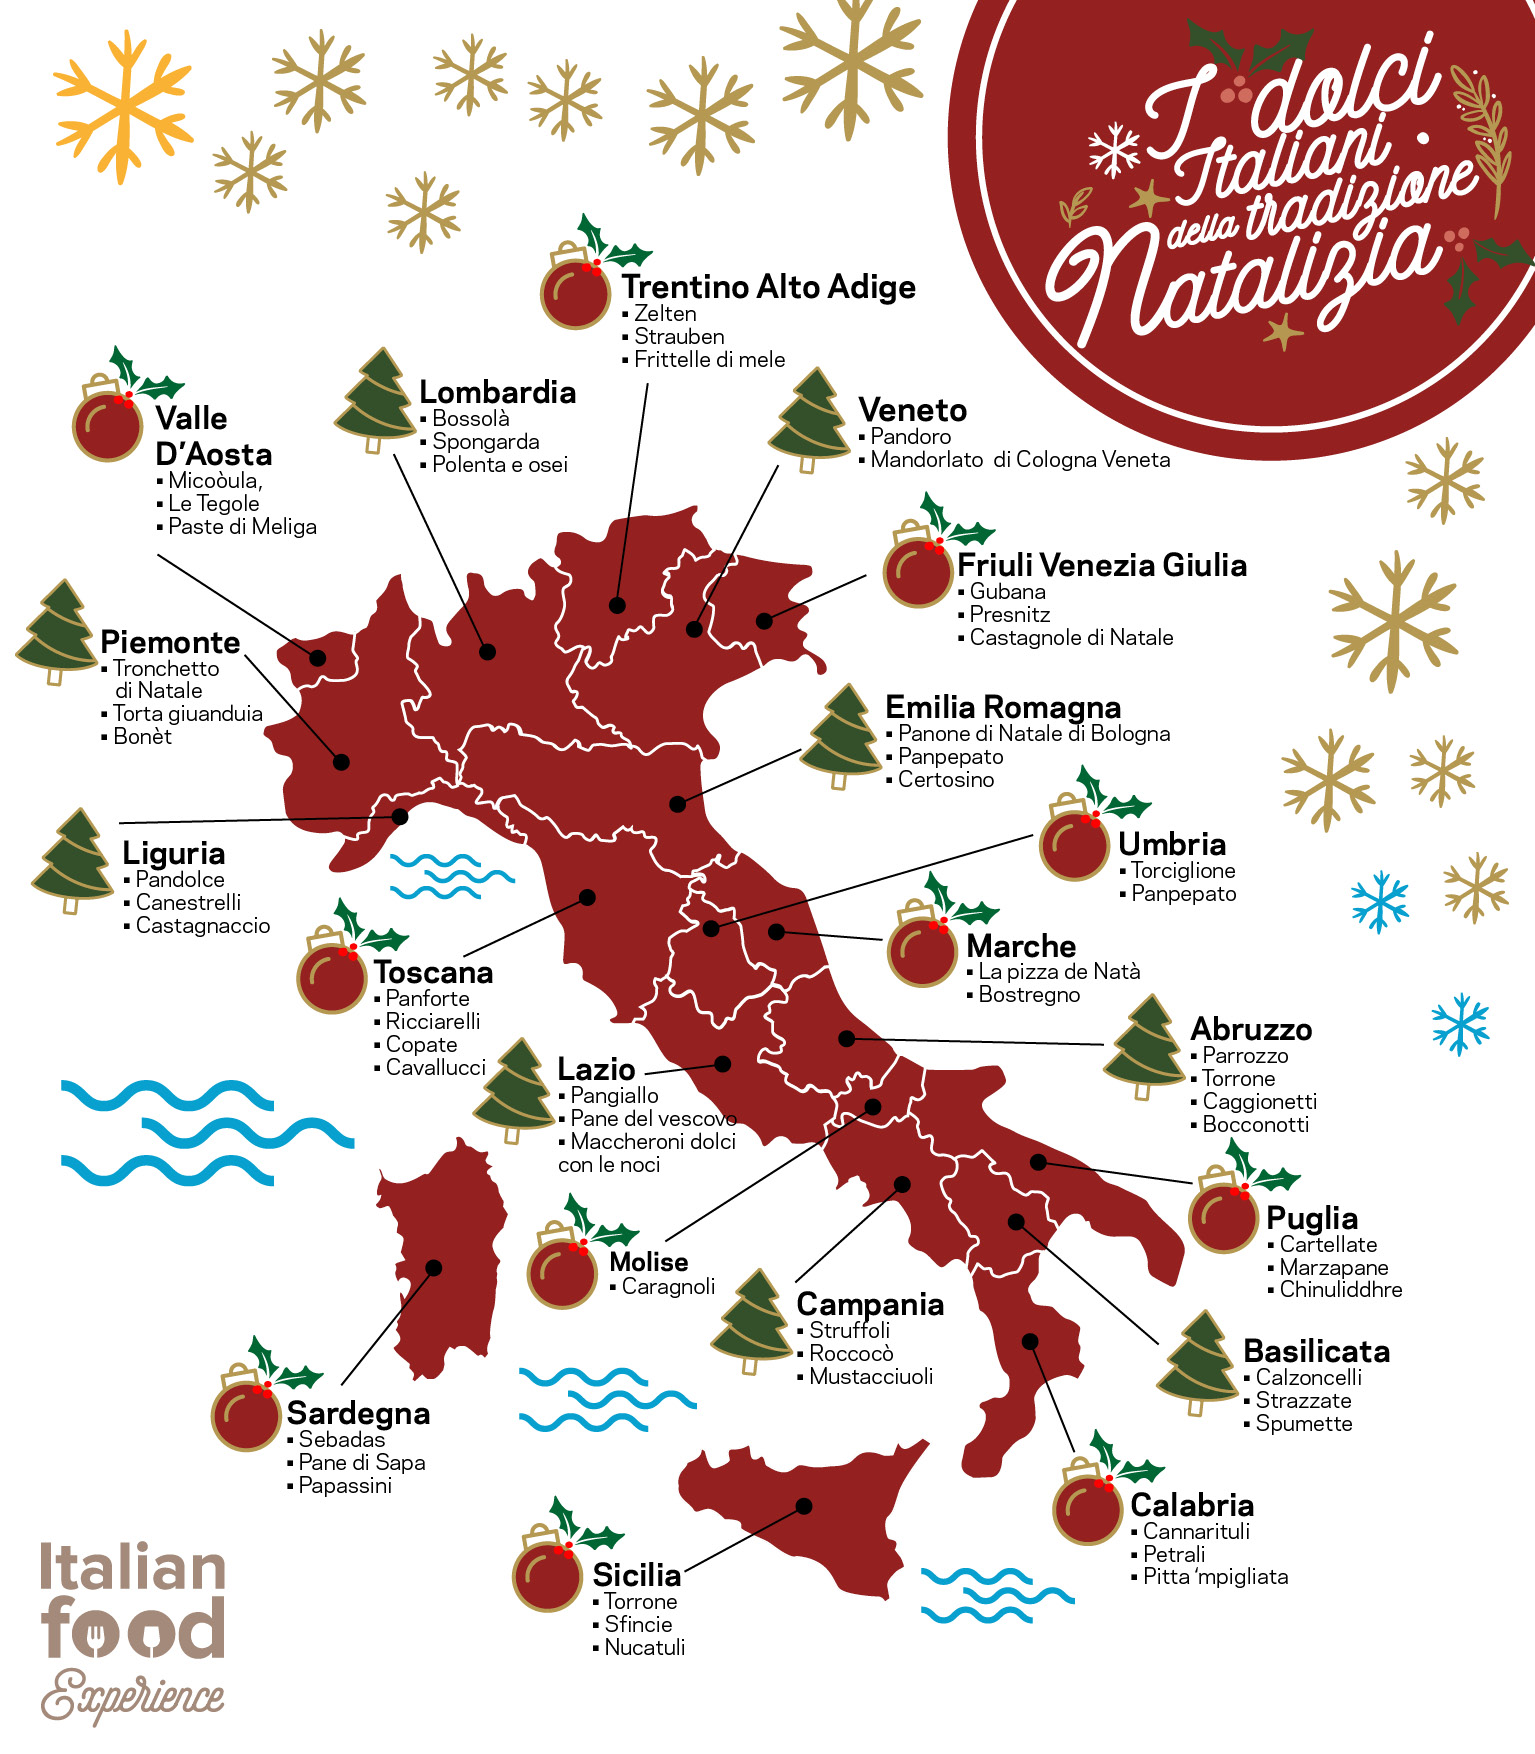 Dolci Tipici Italiani Di Natale.Dolci Tipici Natalizi In Italia Regione Per Regione